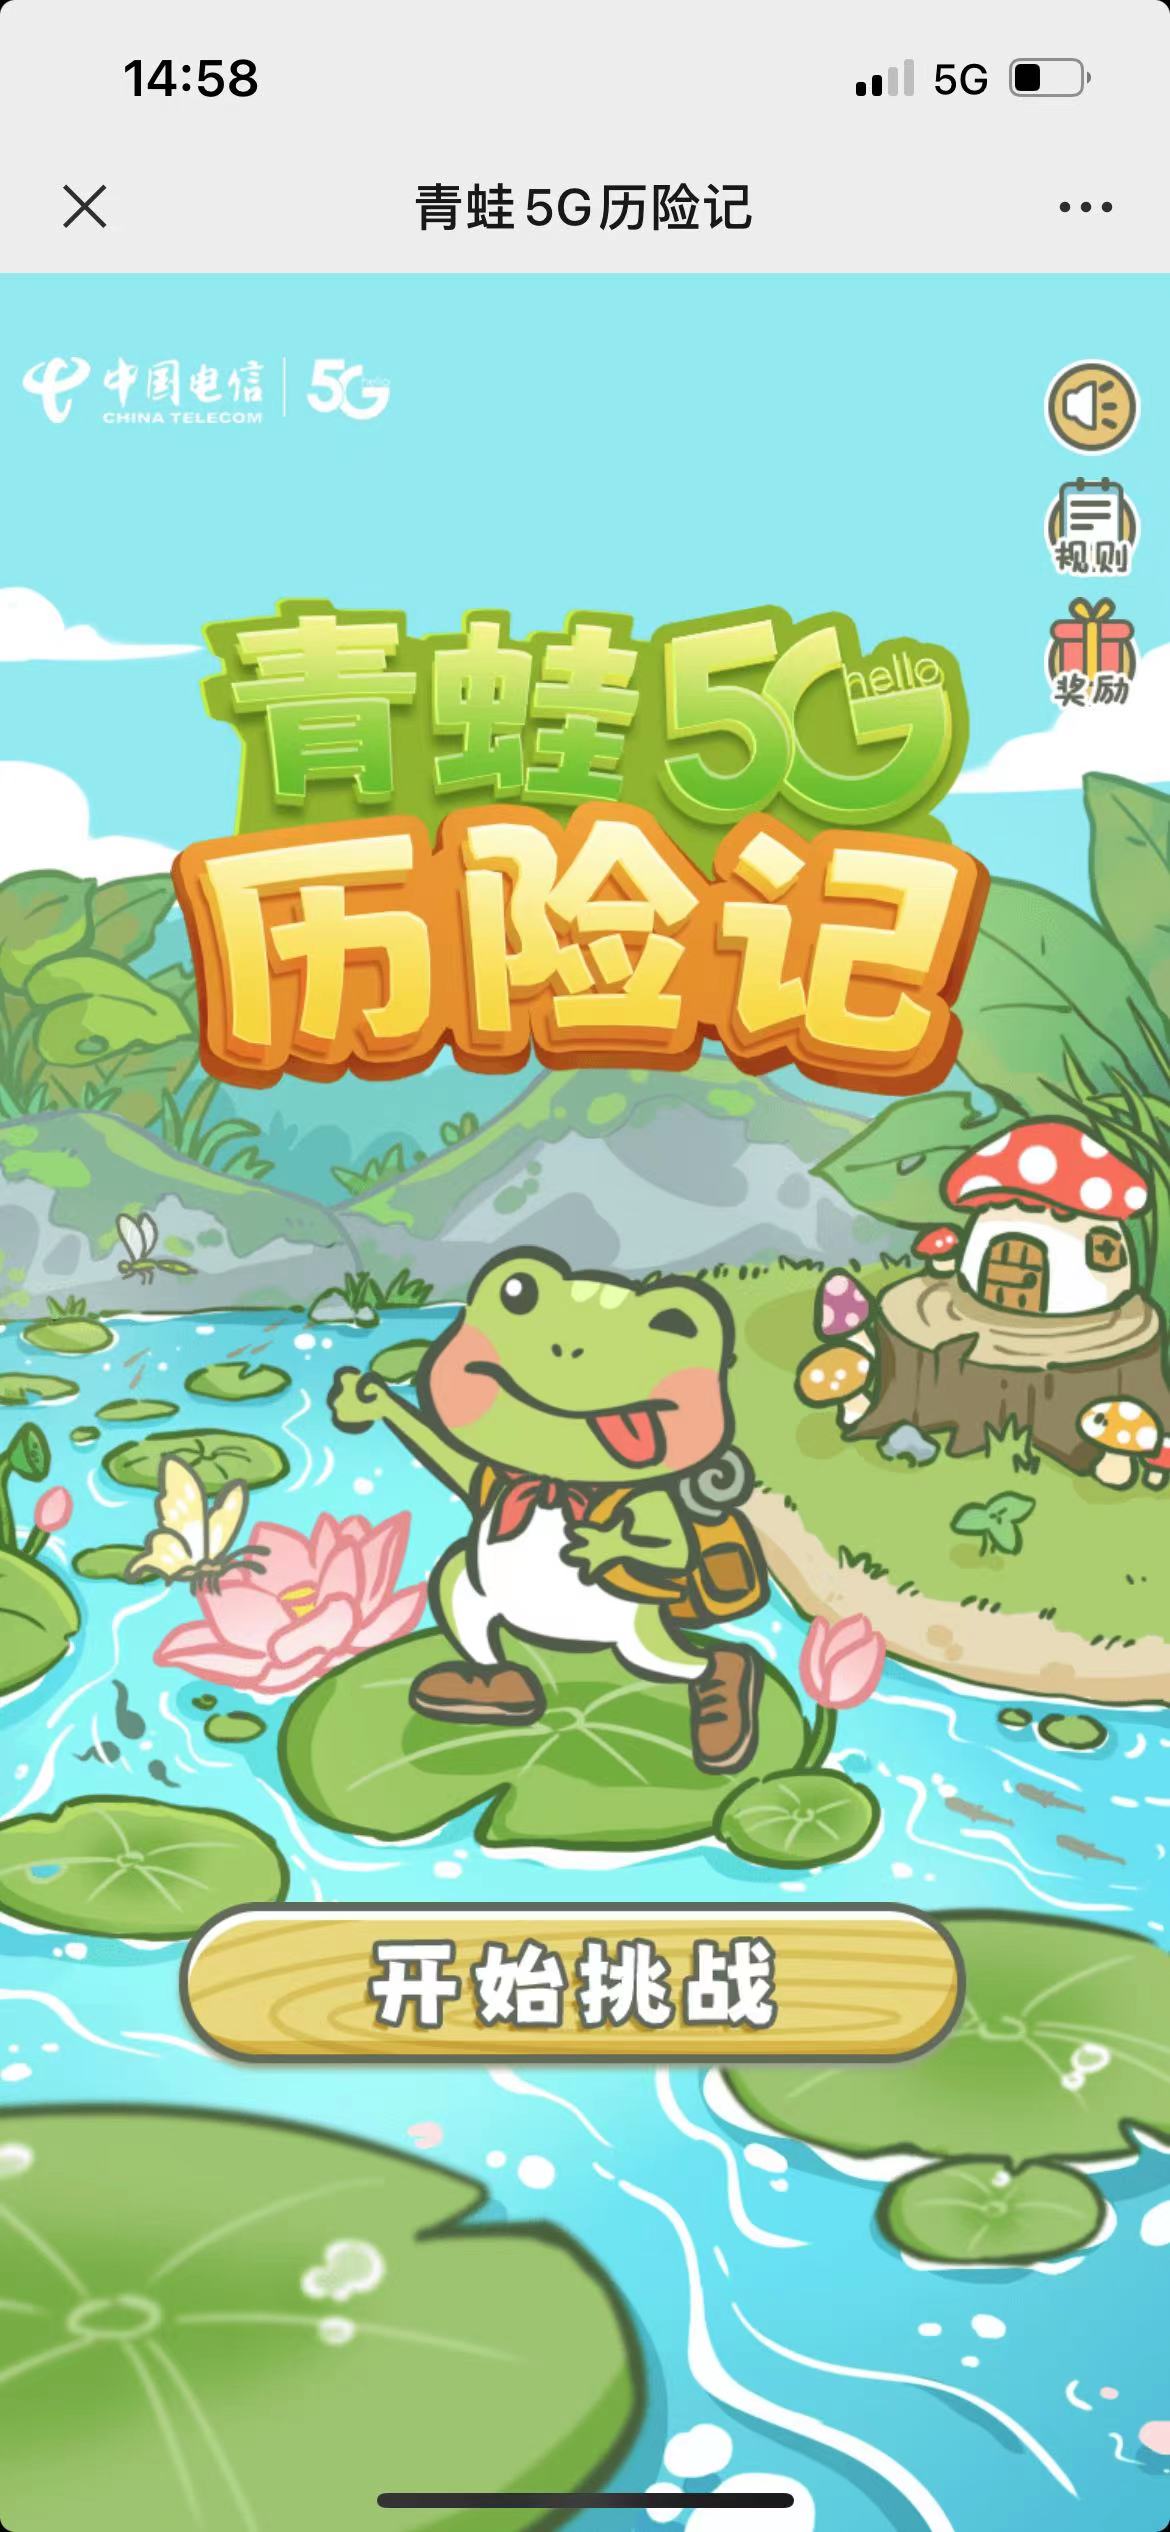 杭州电信青蛙5G历险记小游戏抽0.3-2元微信红包